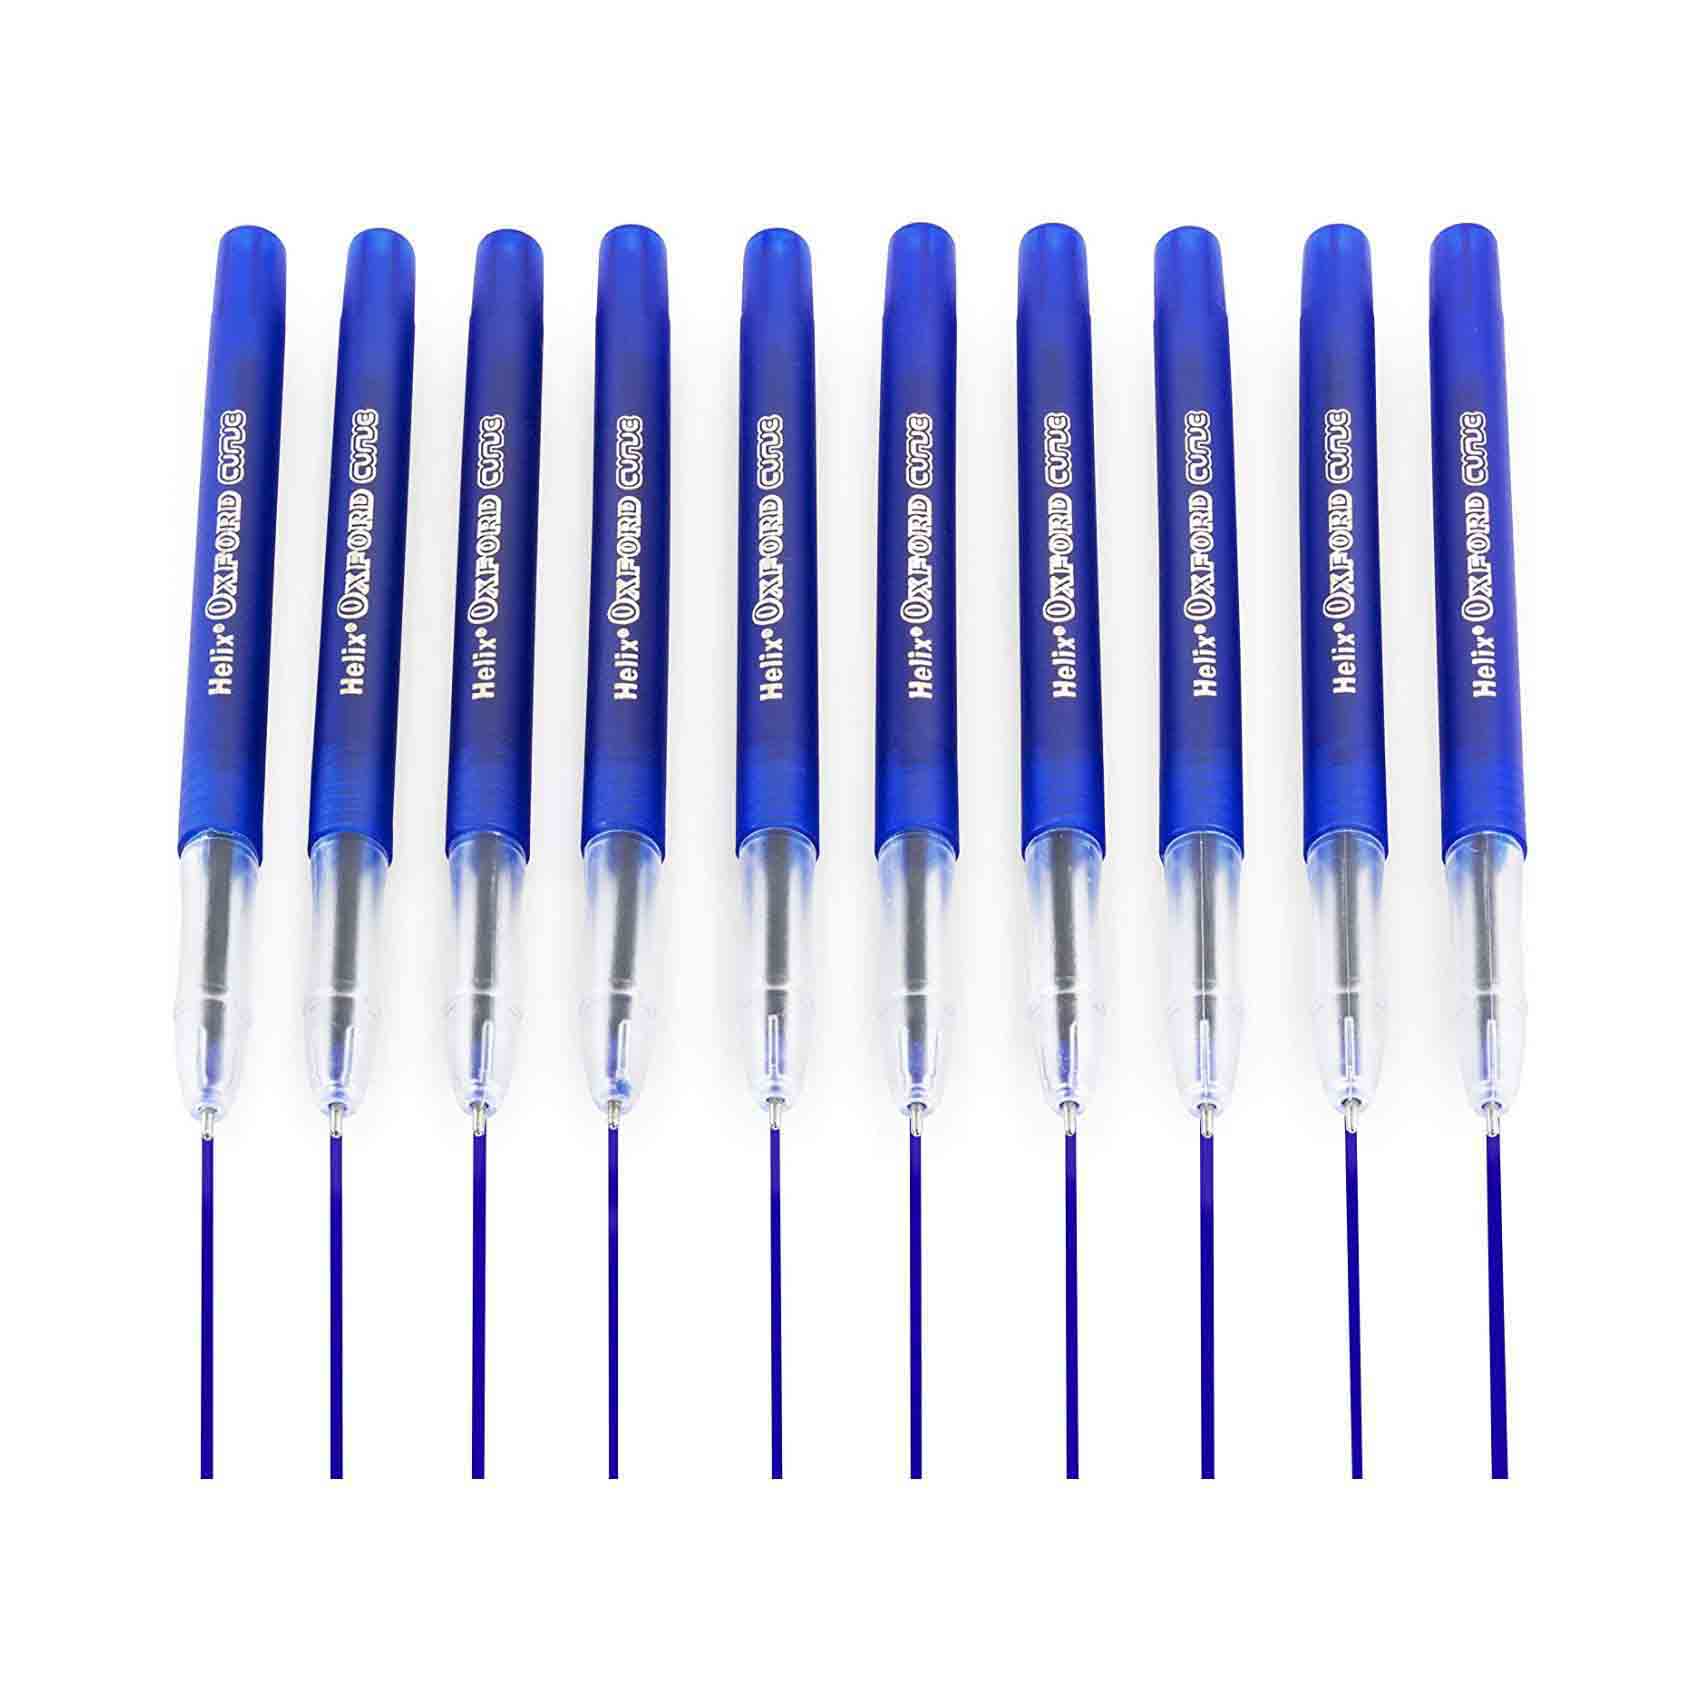 هيليكس أكسفورد قلم حبر جاف بكرة دوارة 1 مم 10 قطع - أزرق